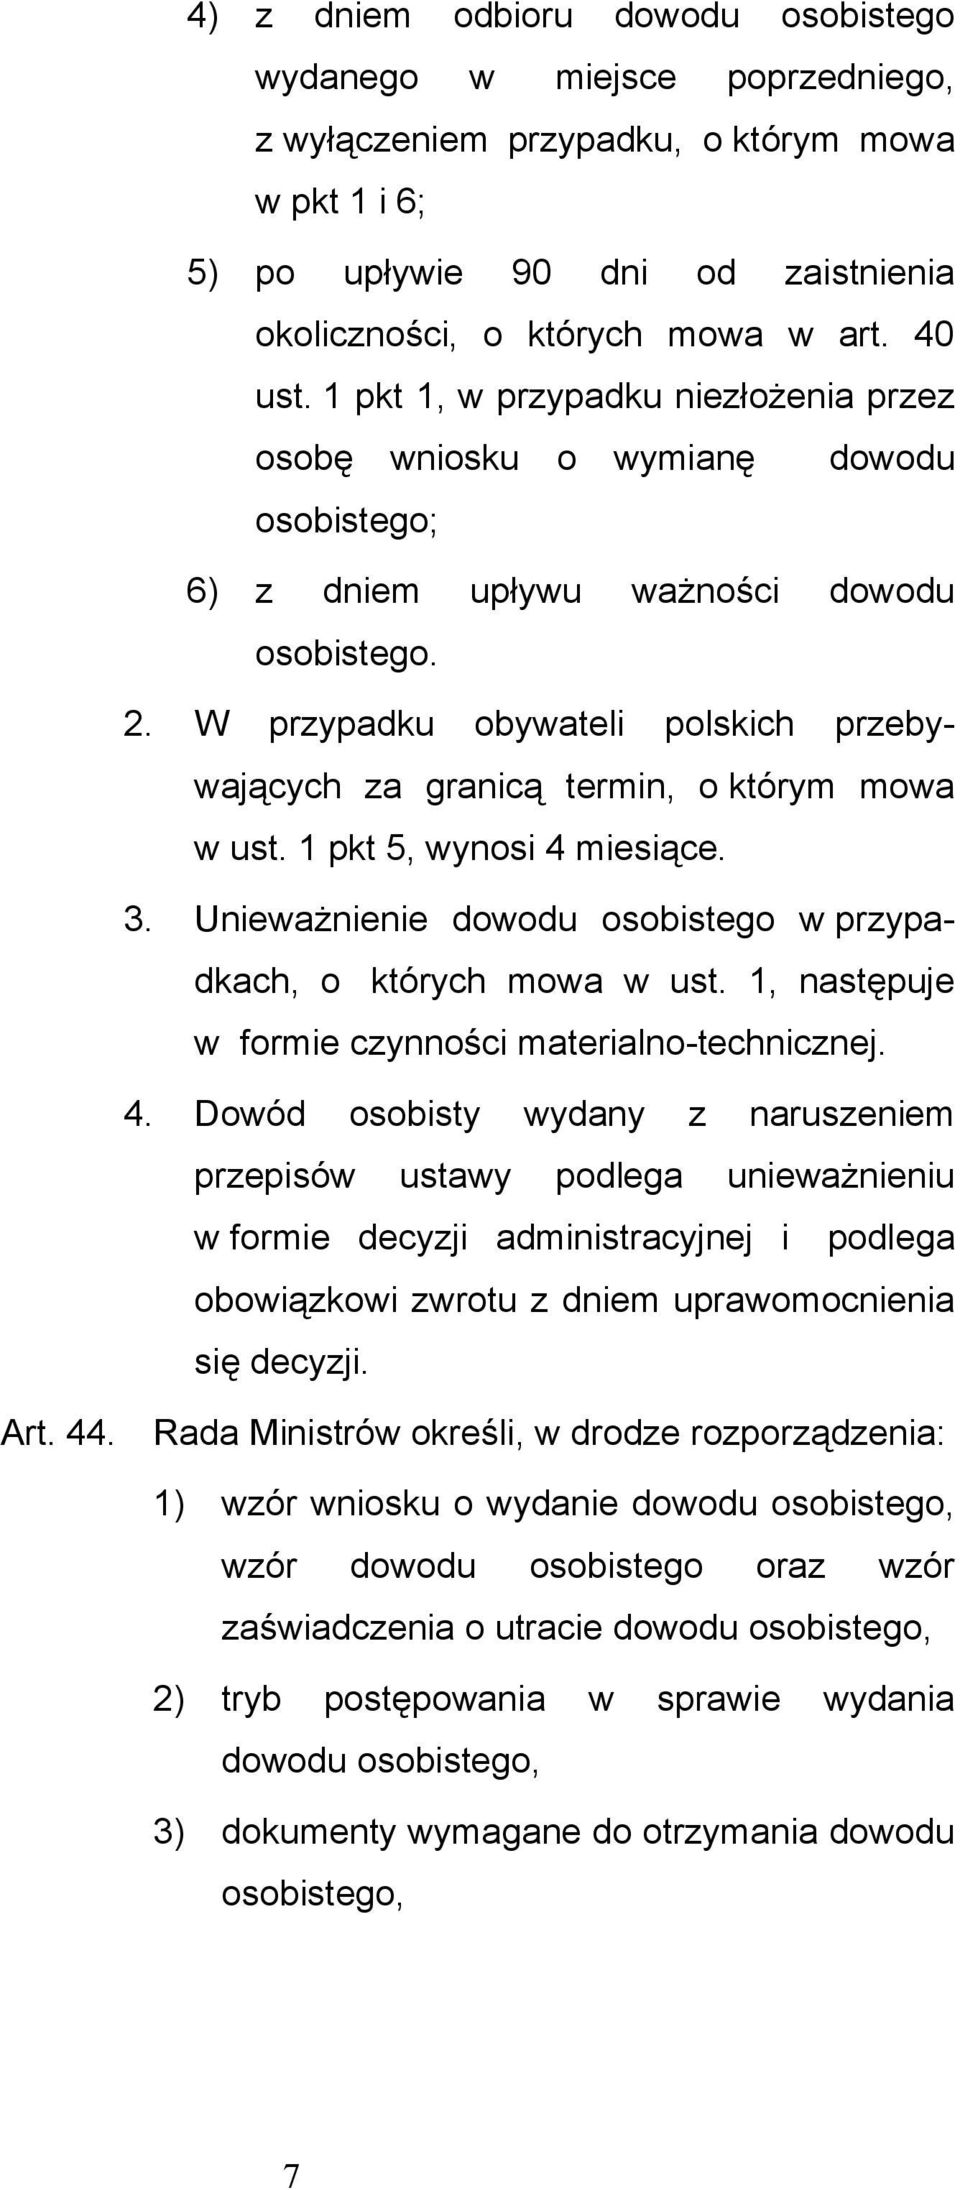 W przypadku obywateli polskich przebywających za granicą termin, o którym mowa w ust. 1 pkt 5, wynosi 4 miesiące. 3. Unieważnienie dowodu osobistego w przypadkach, o których mowa w ust.